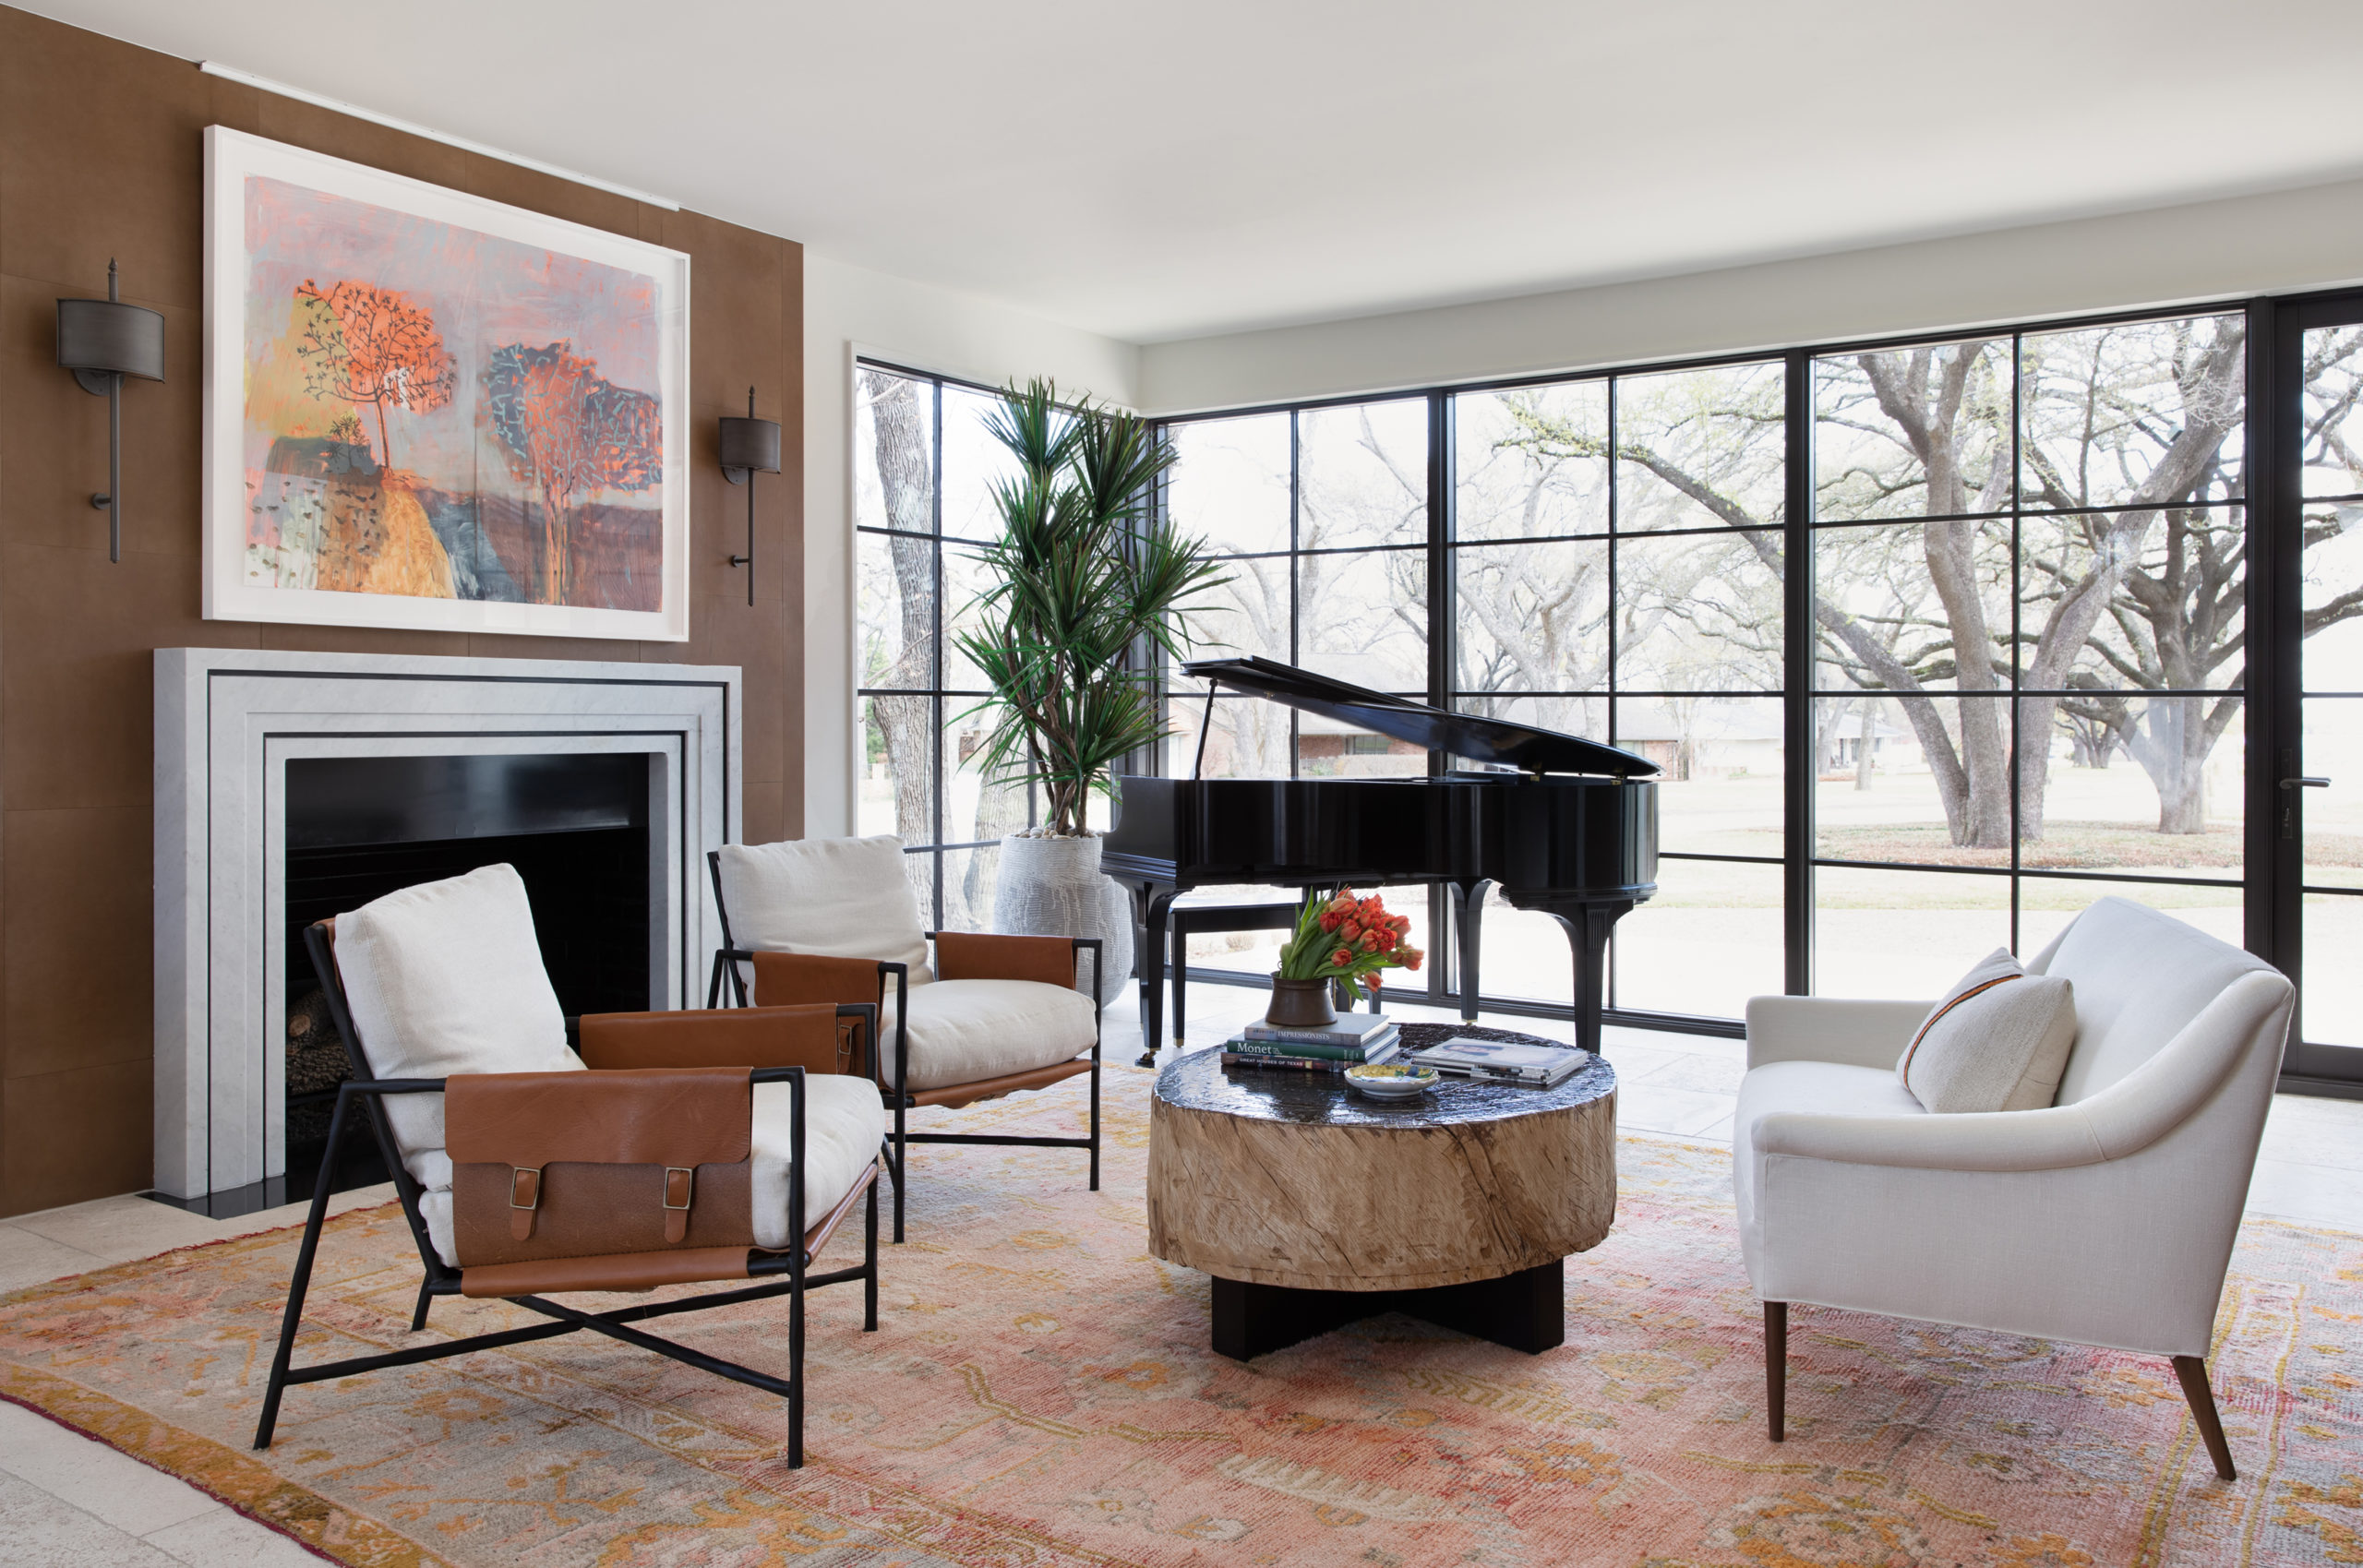 Livable Luxury, Interior Design In East Dallas